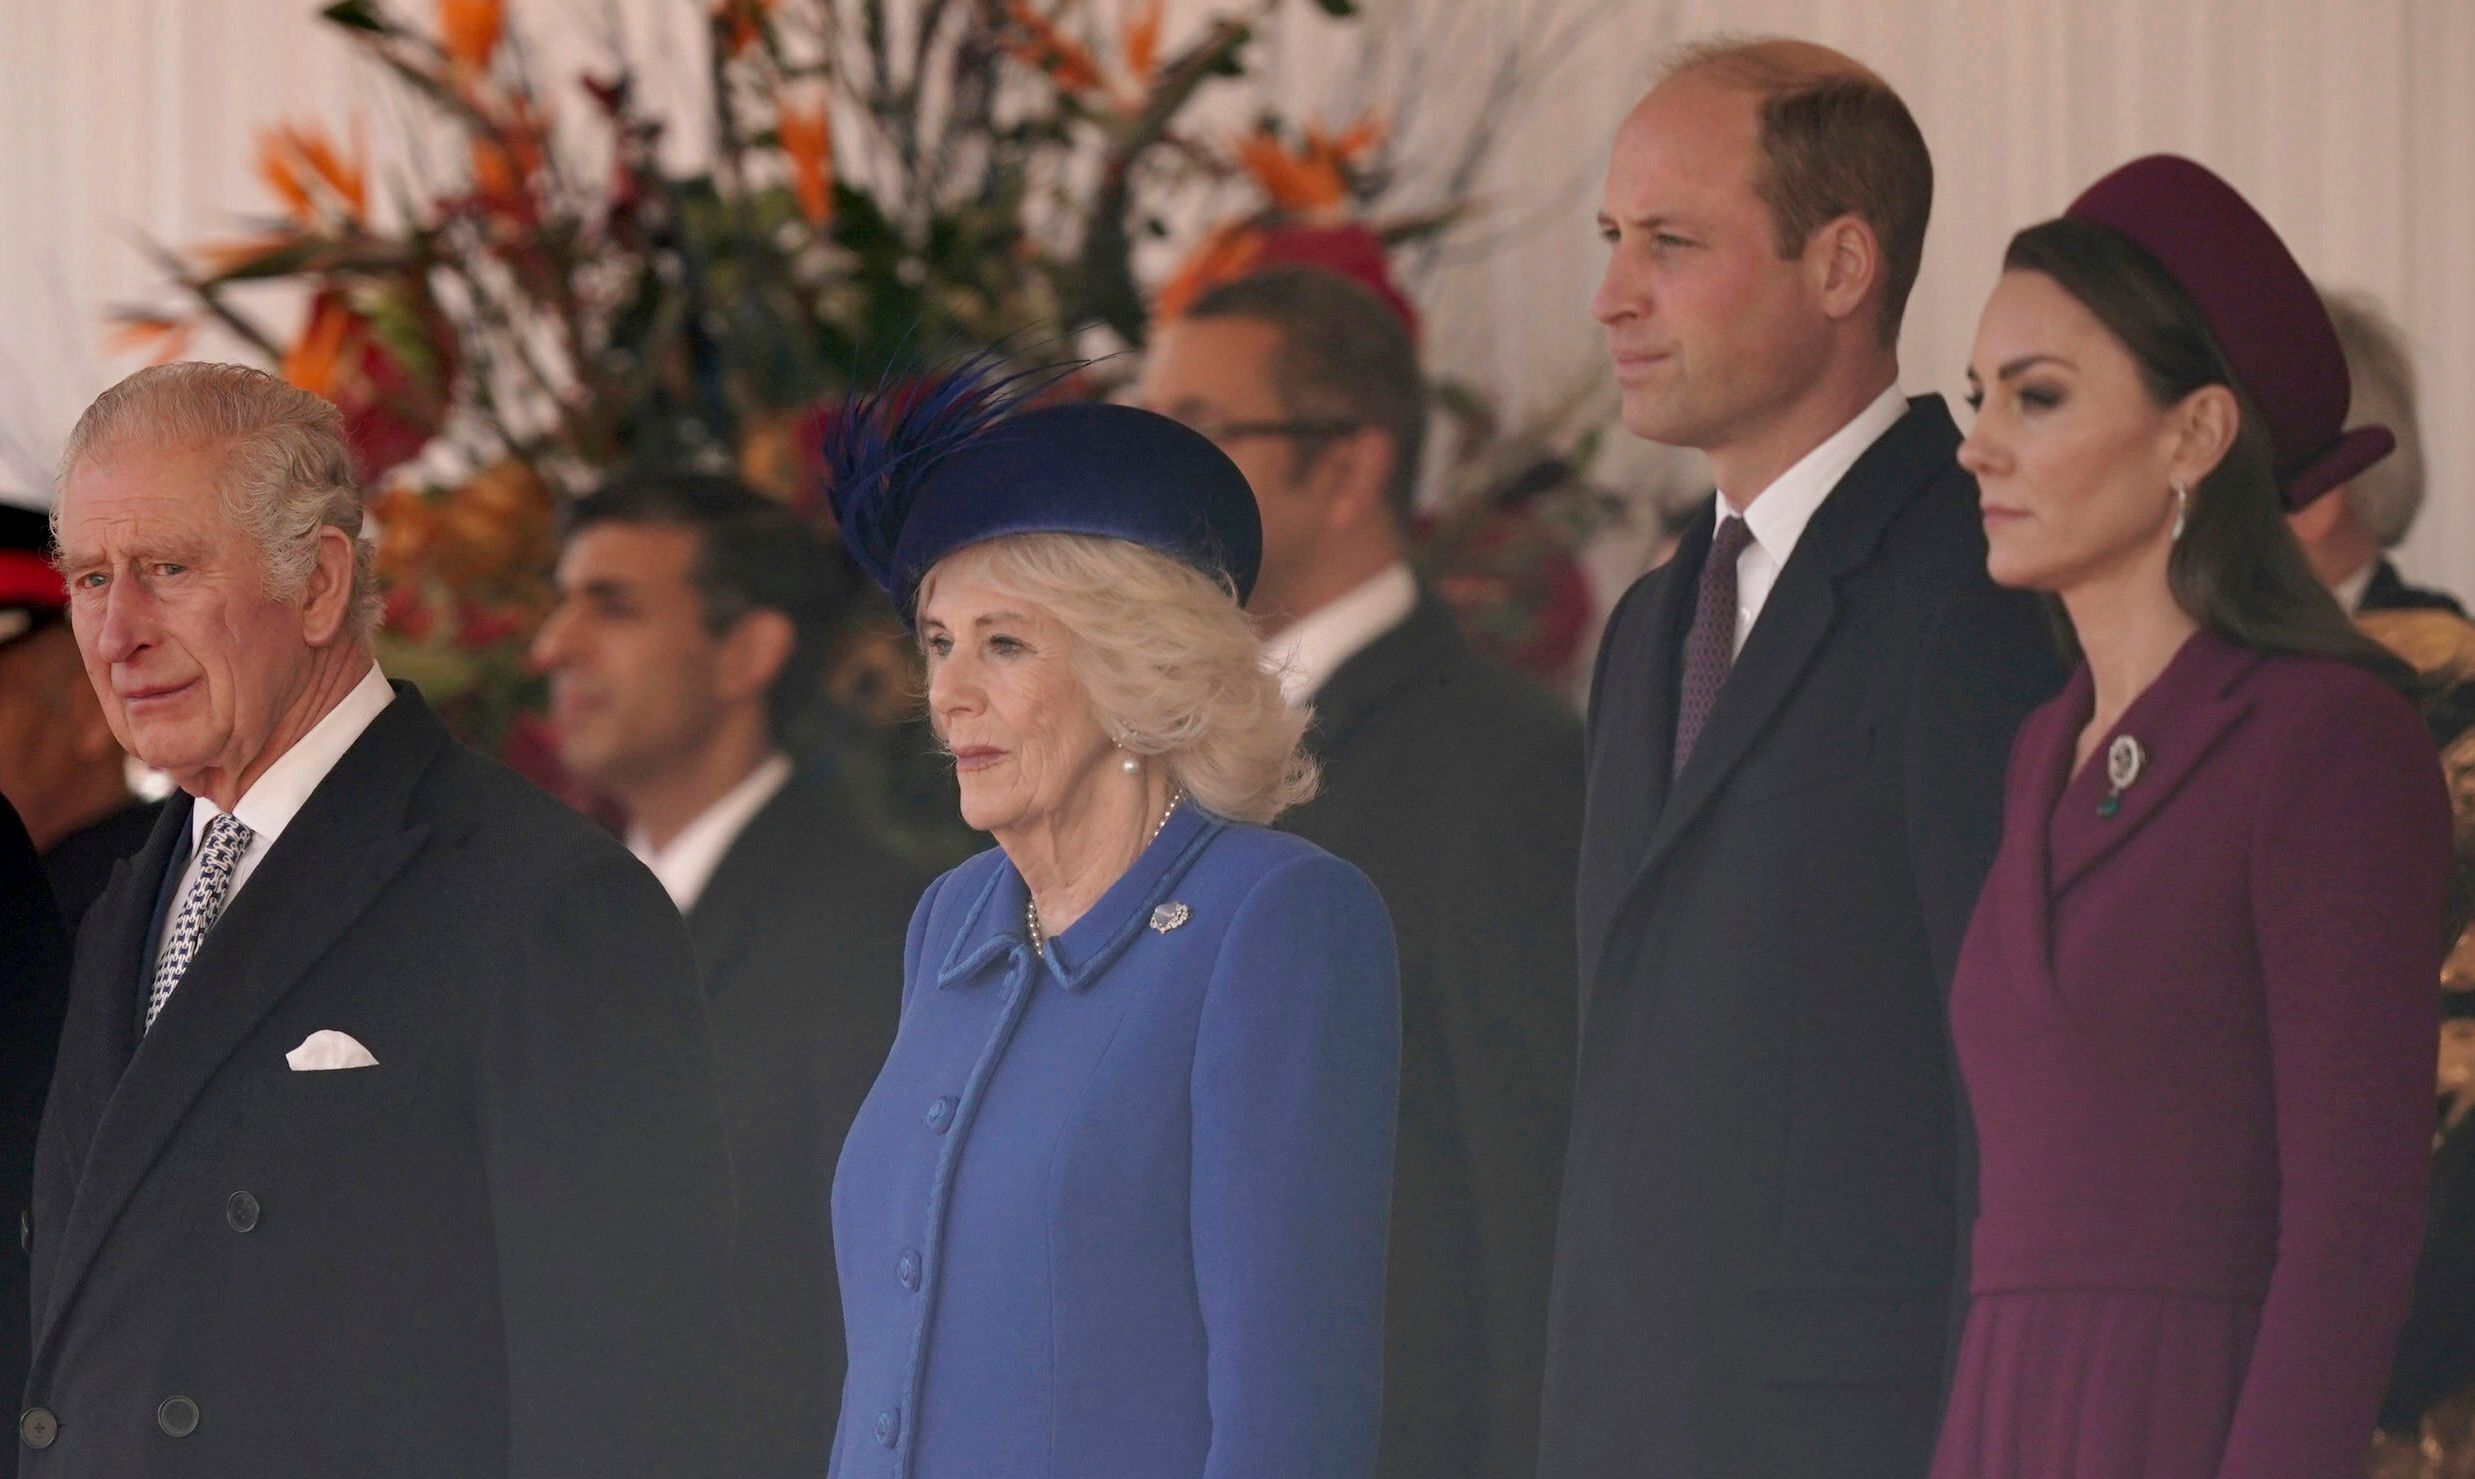 Trotz Krönung kommen Charles und Camilla in den Beliebtheitswerten erst nach Kate und William